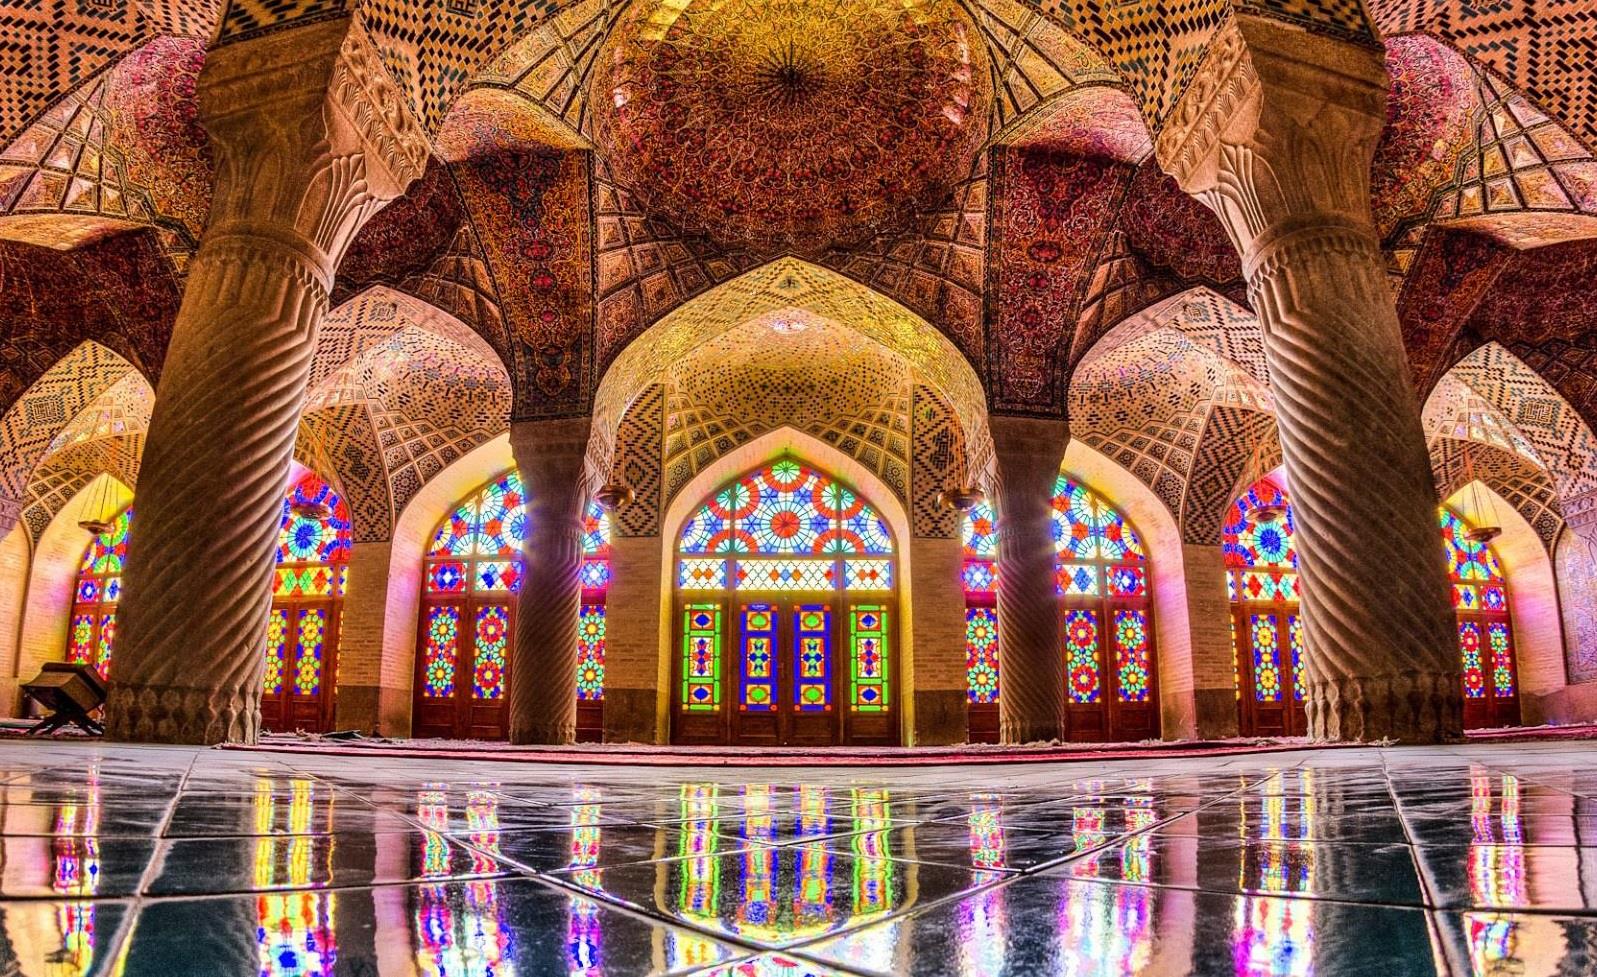 تحقیق بررسی اشعار کتیبه ای بناهای تاریخی (دوره اسلامی) در شیراز